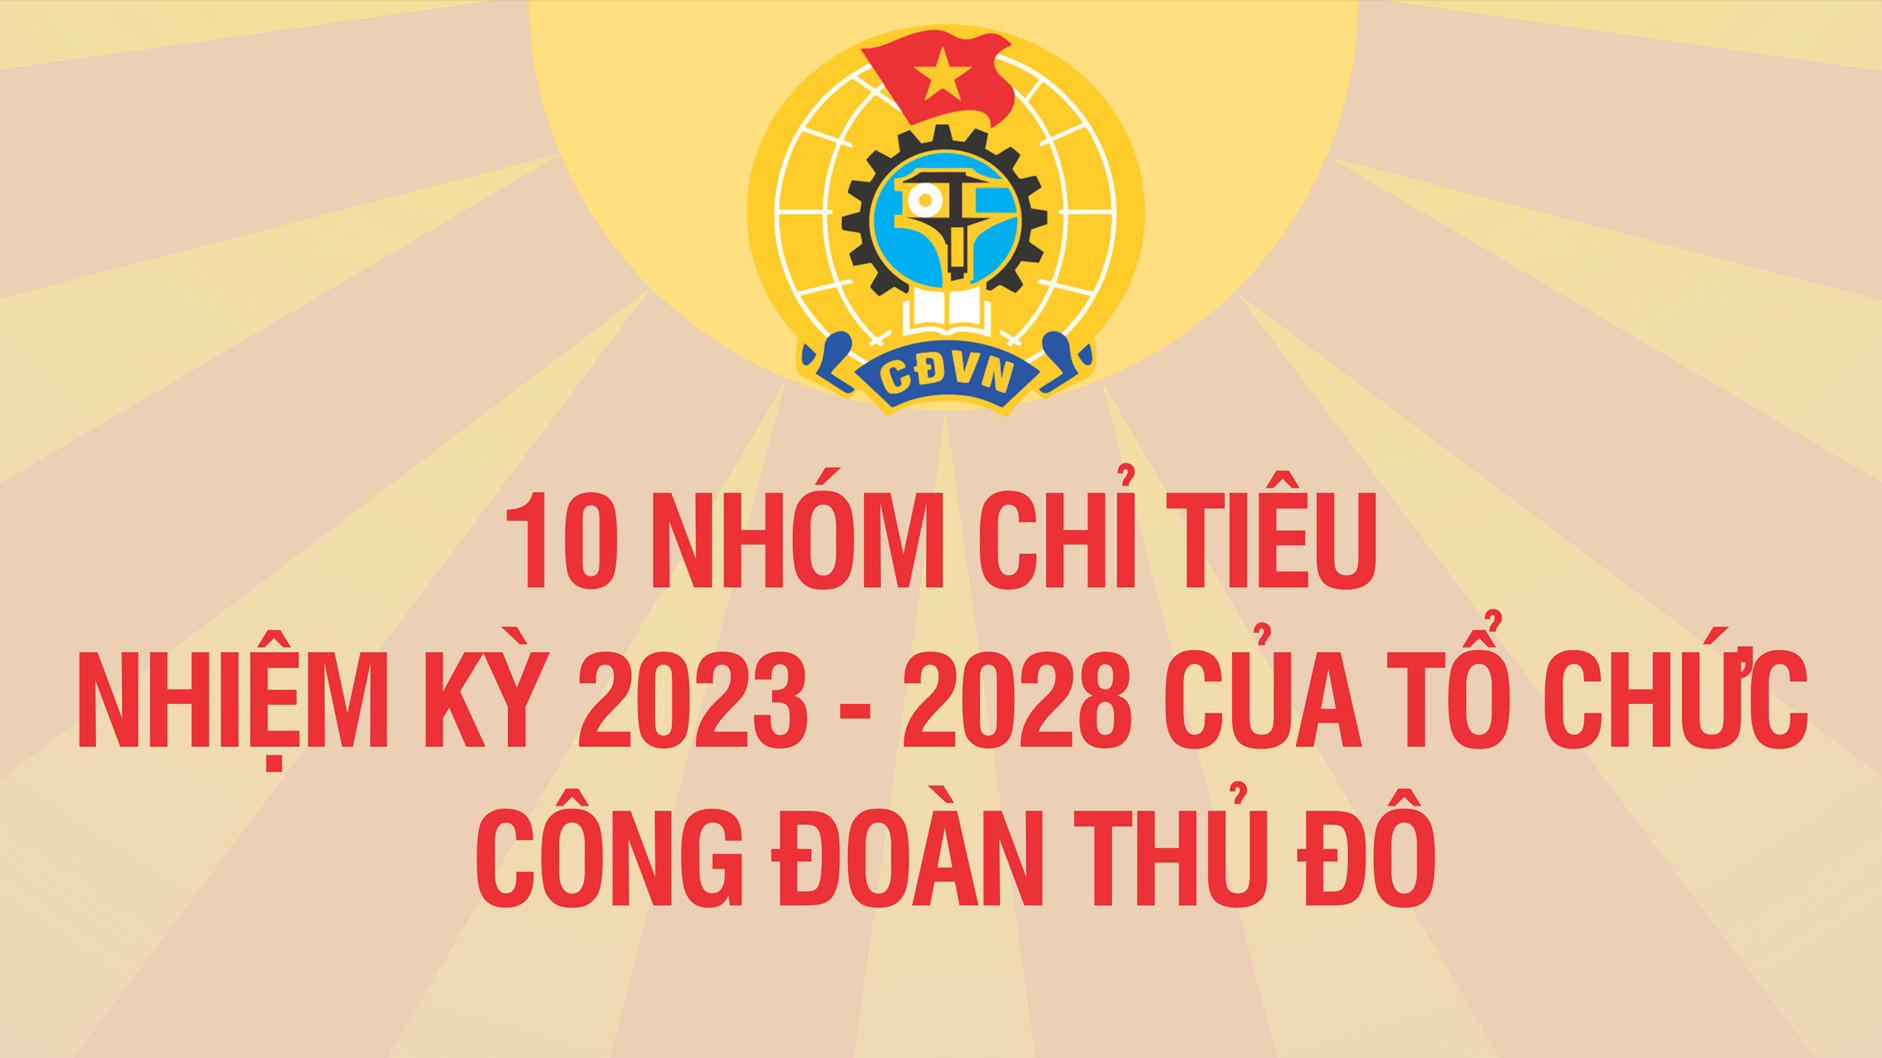 Infographic: 10 nhóm chỉ tiêu nhiệm kỳ 2023 - 2028 của tổ chức Công đoàn Thủ đô